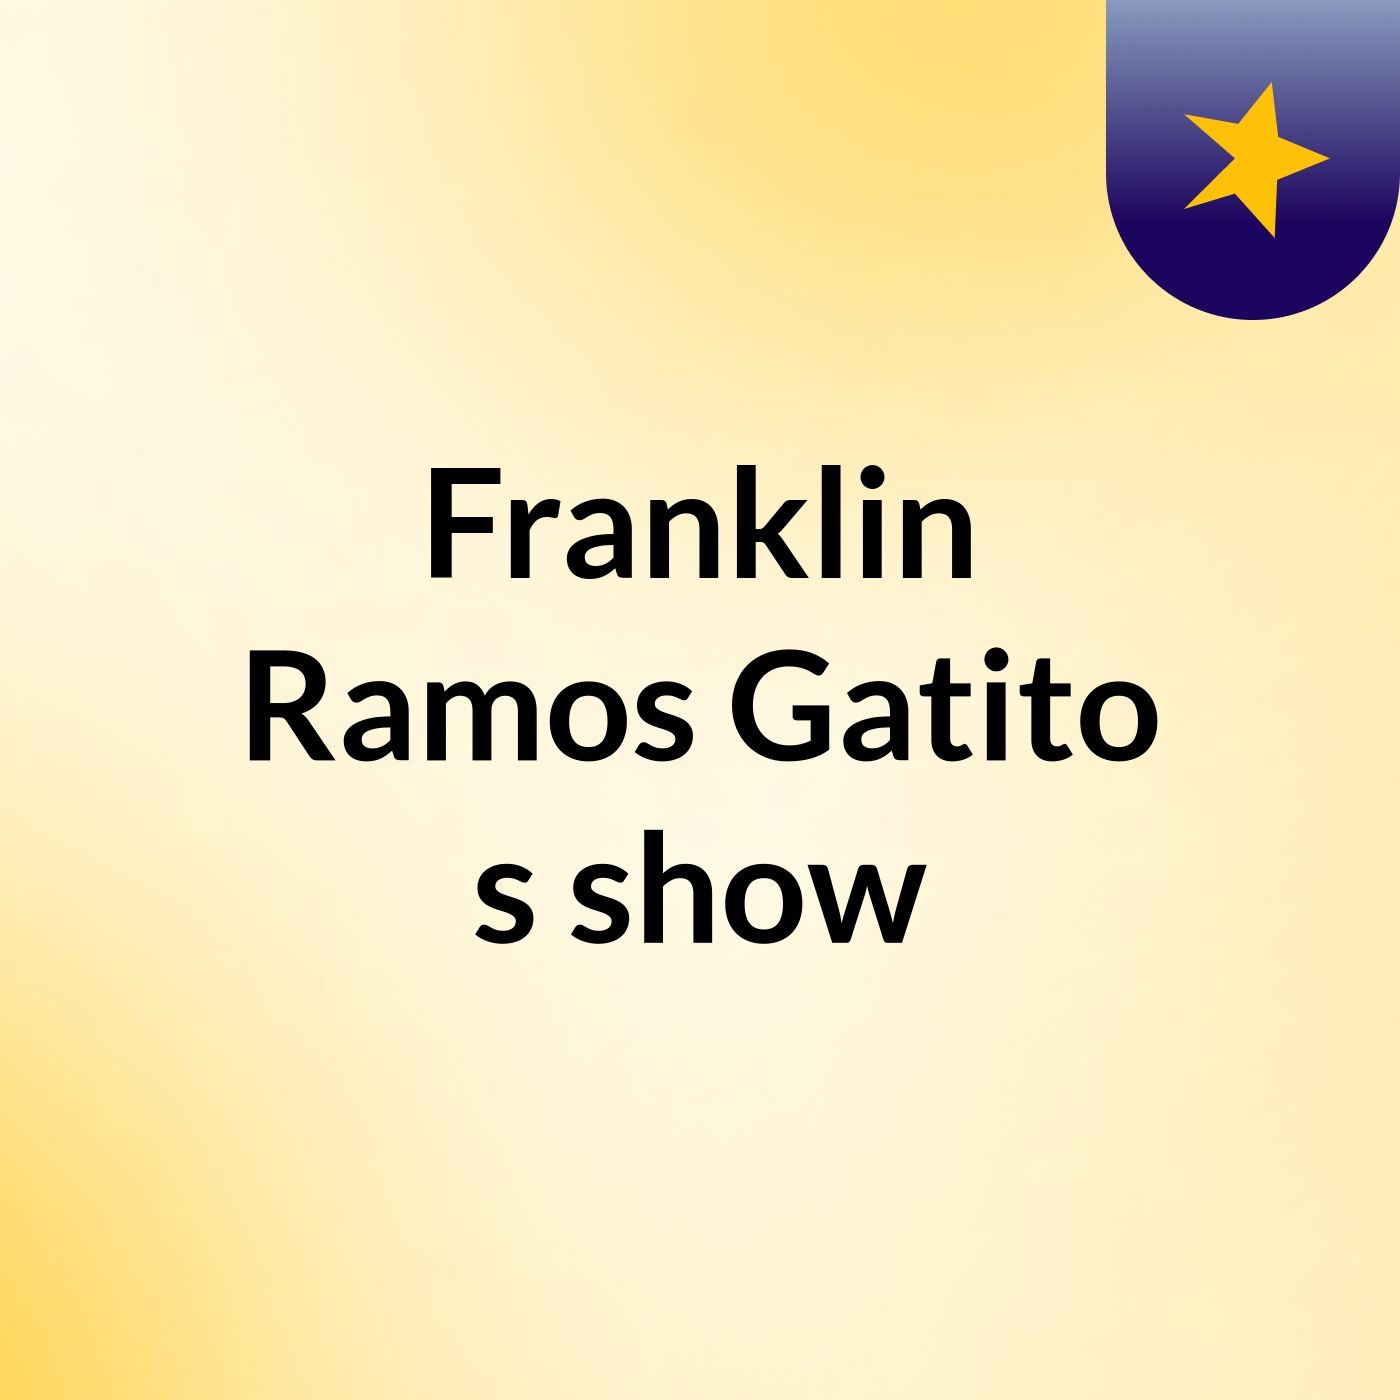 Franklin Ramos Gatito's show